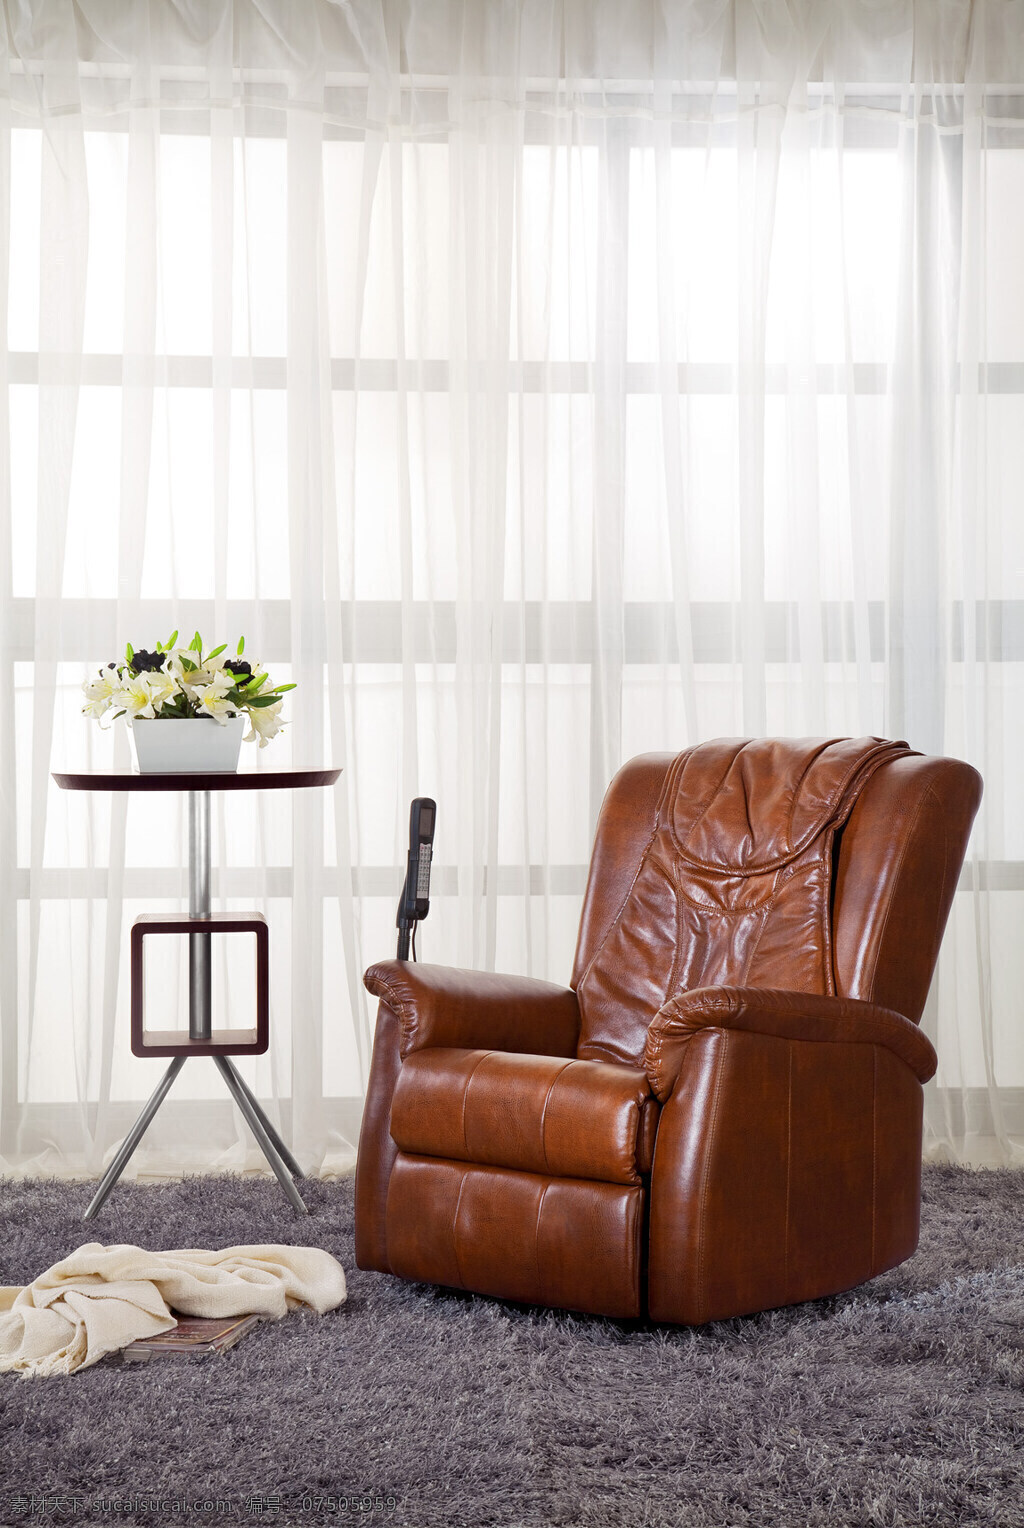 多功能 真皮沙发 地毯 背景 单个沙发 沙发椅 家居装饰素材 室内设计